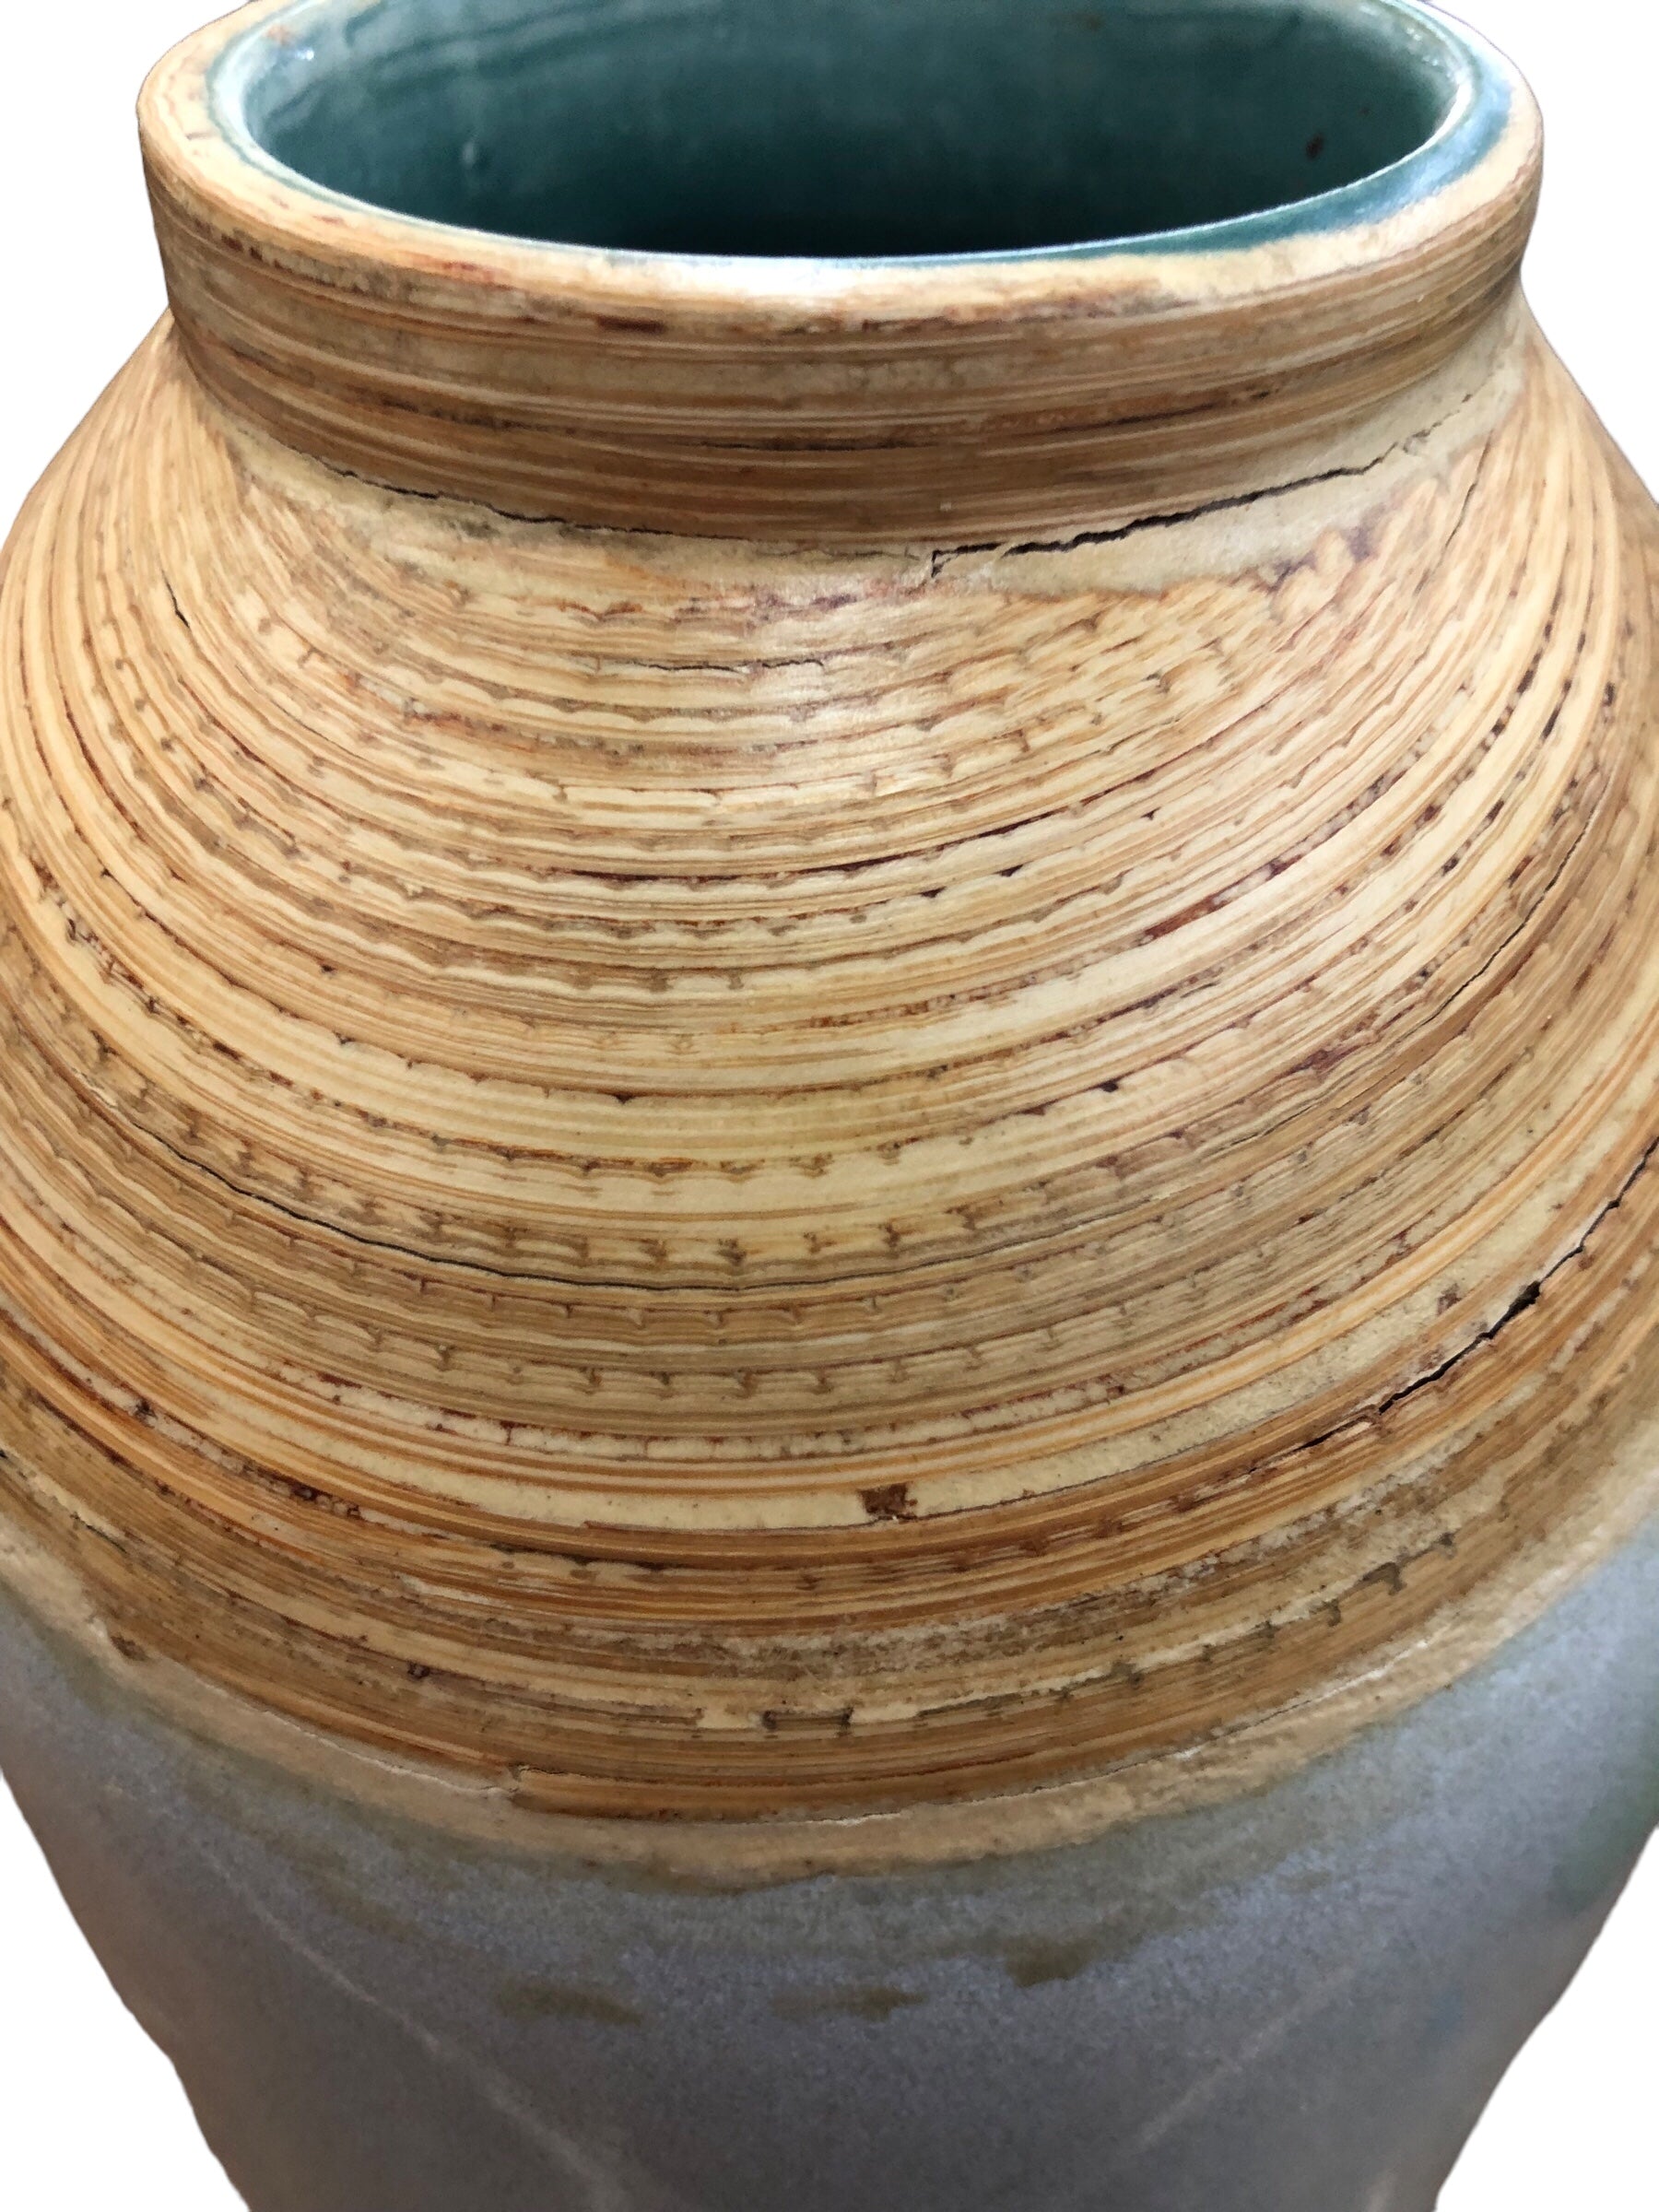 Ceramic Vase Lt. mid grey/ beige top